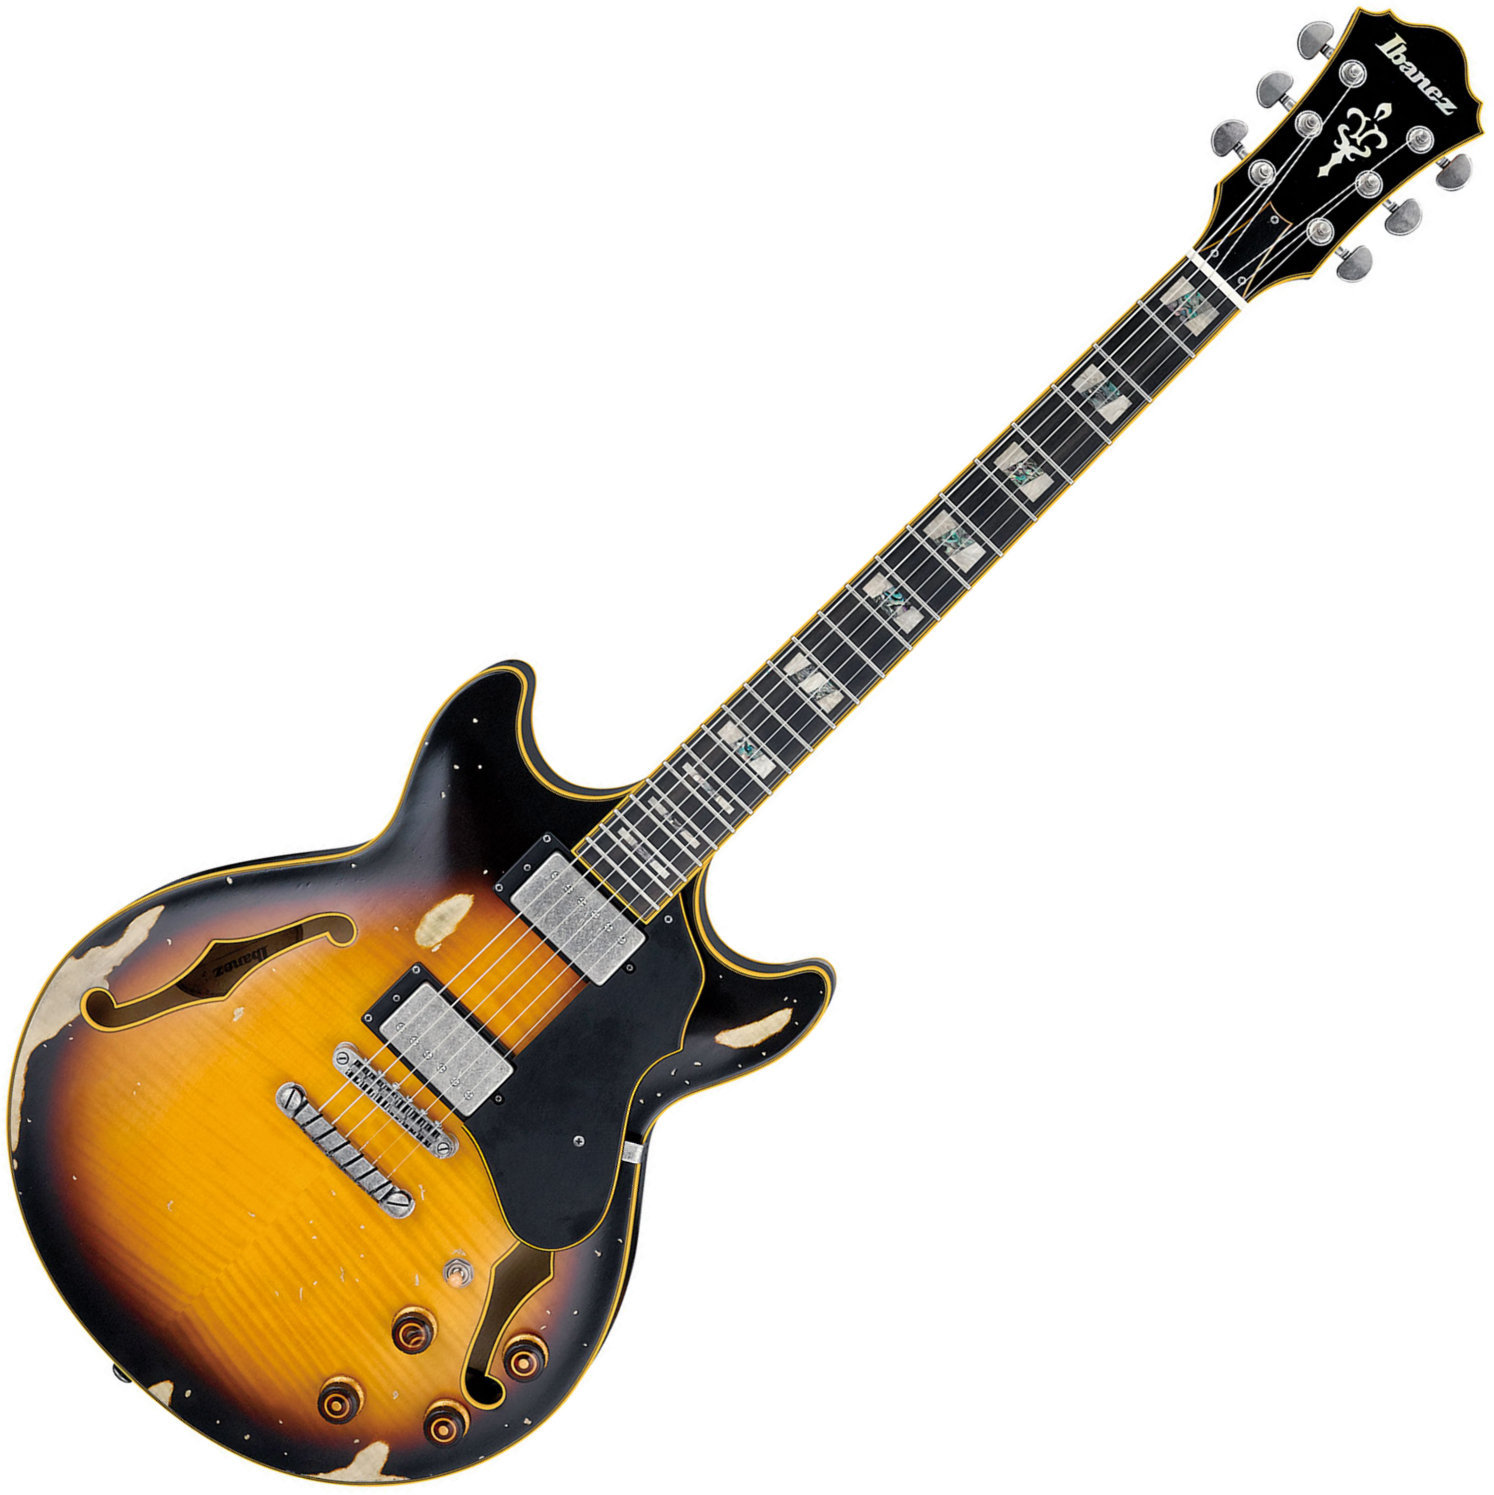 Semiakustická kytara Ibanez AMV100FMD Yellow Sunburst Low Gloss